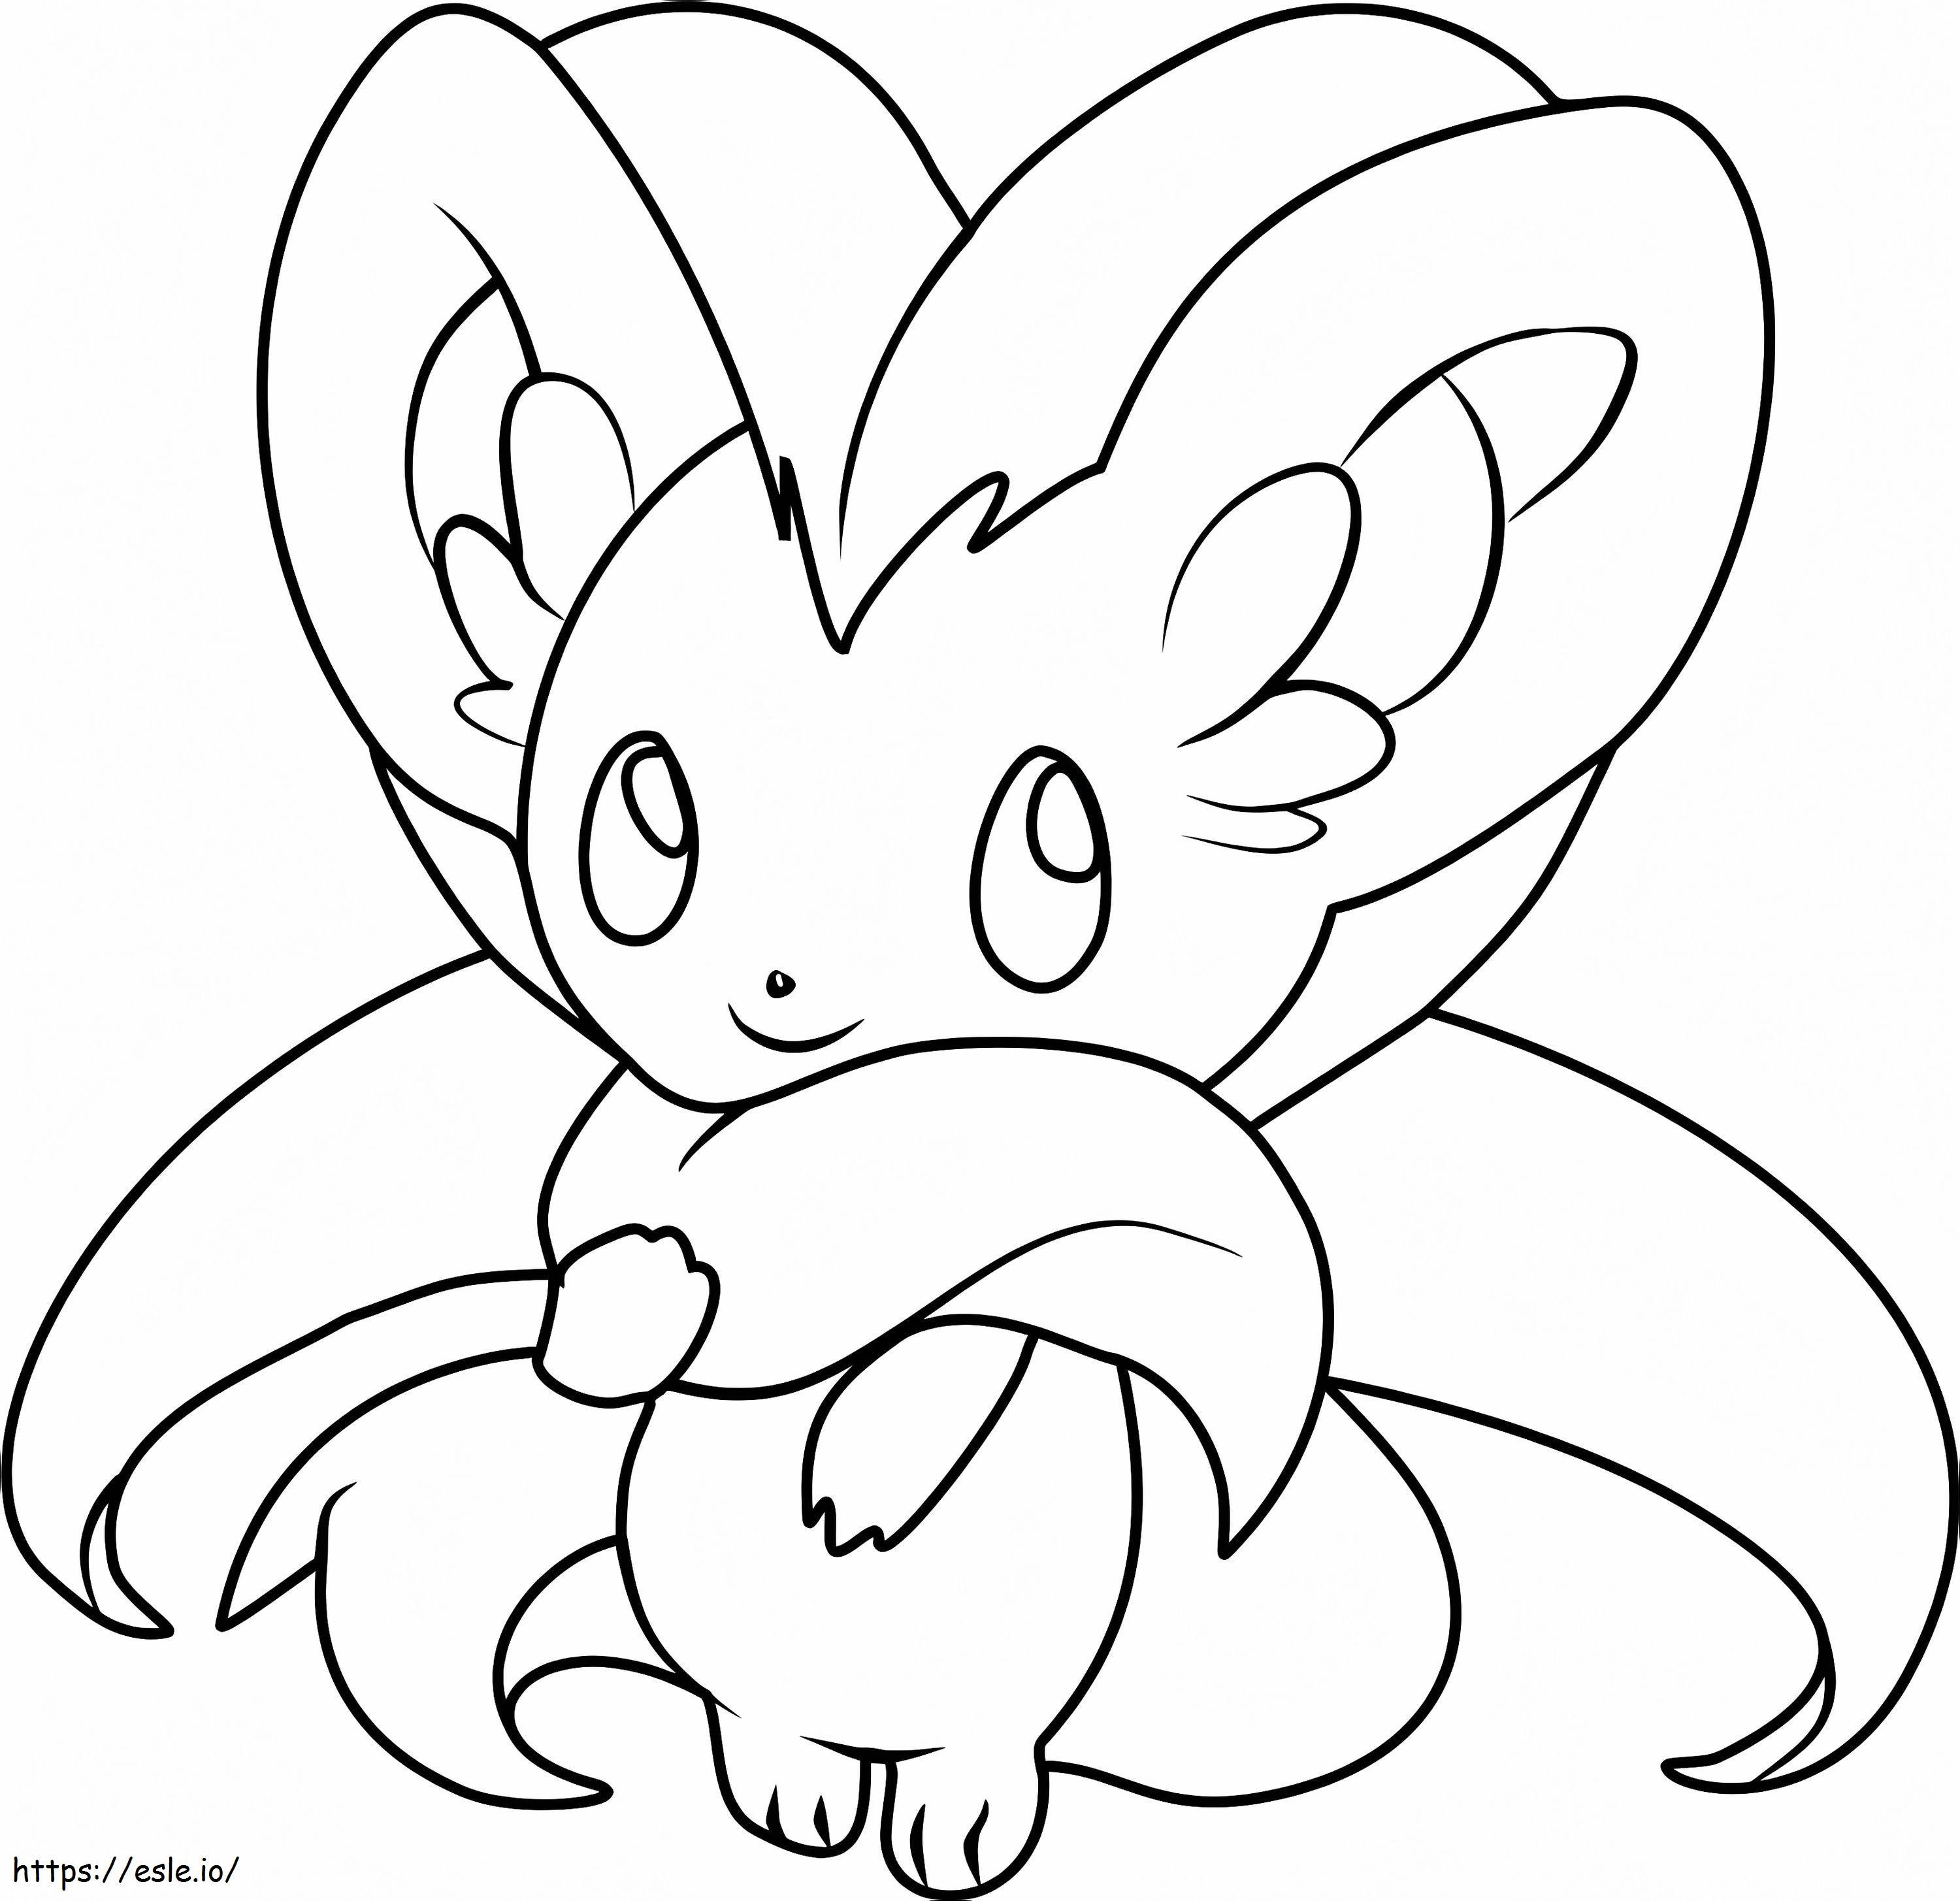 Pokemon Cinccino coloring page